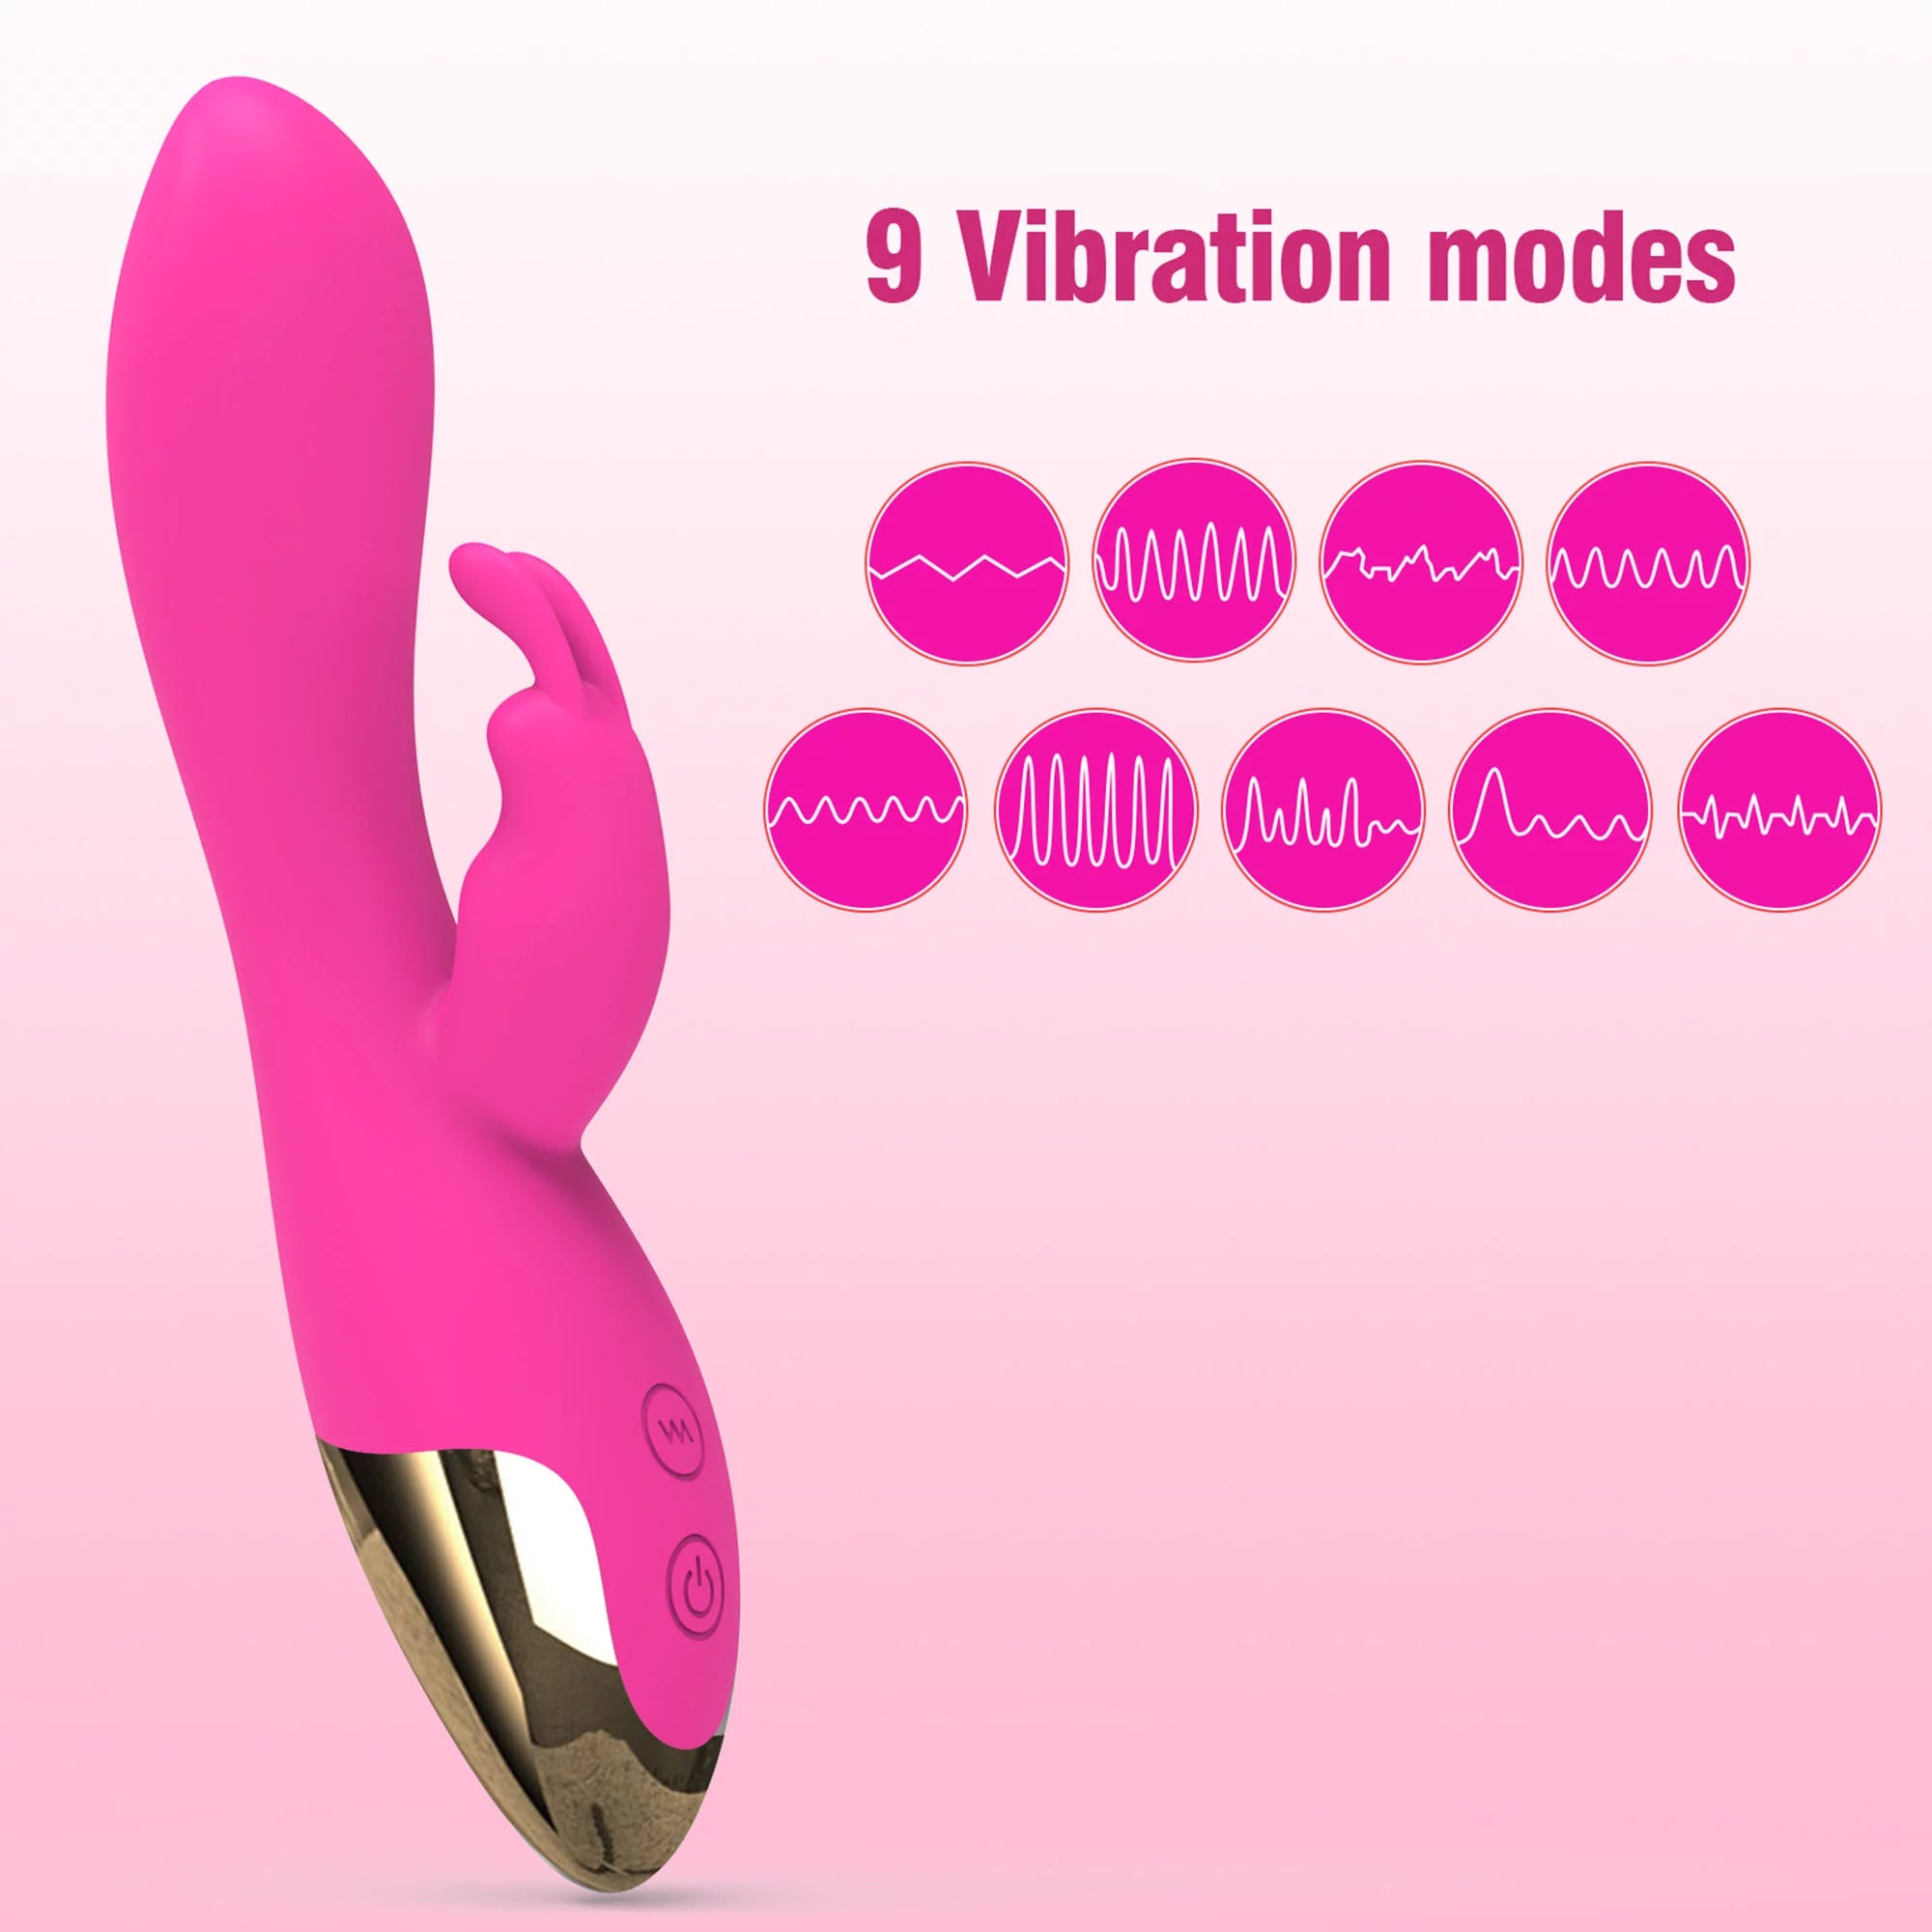 FIDECH 2 Motors 9 Vibrating Modes Rabbit Vibrator